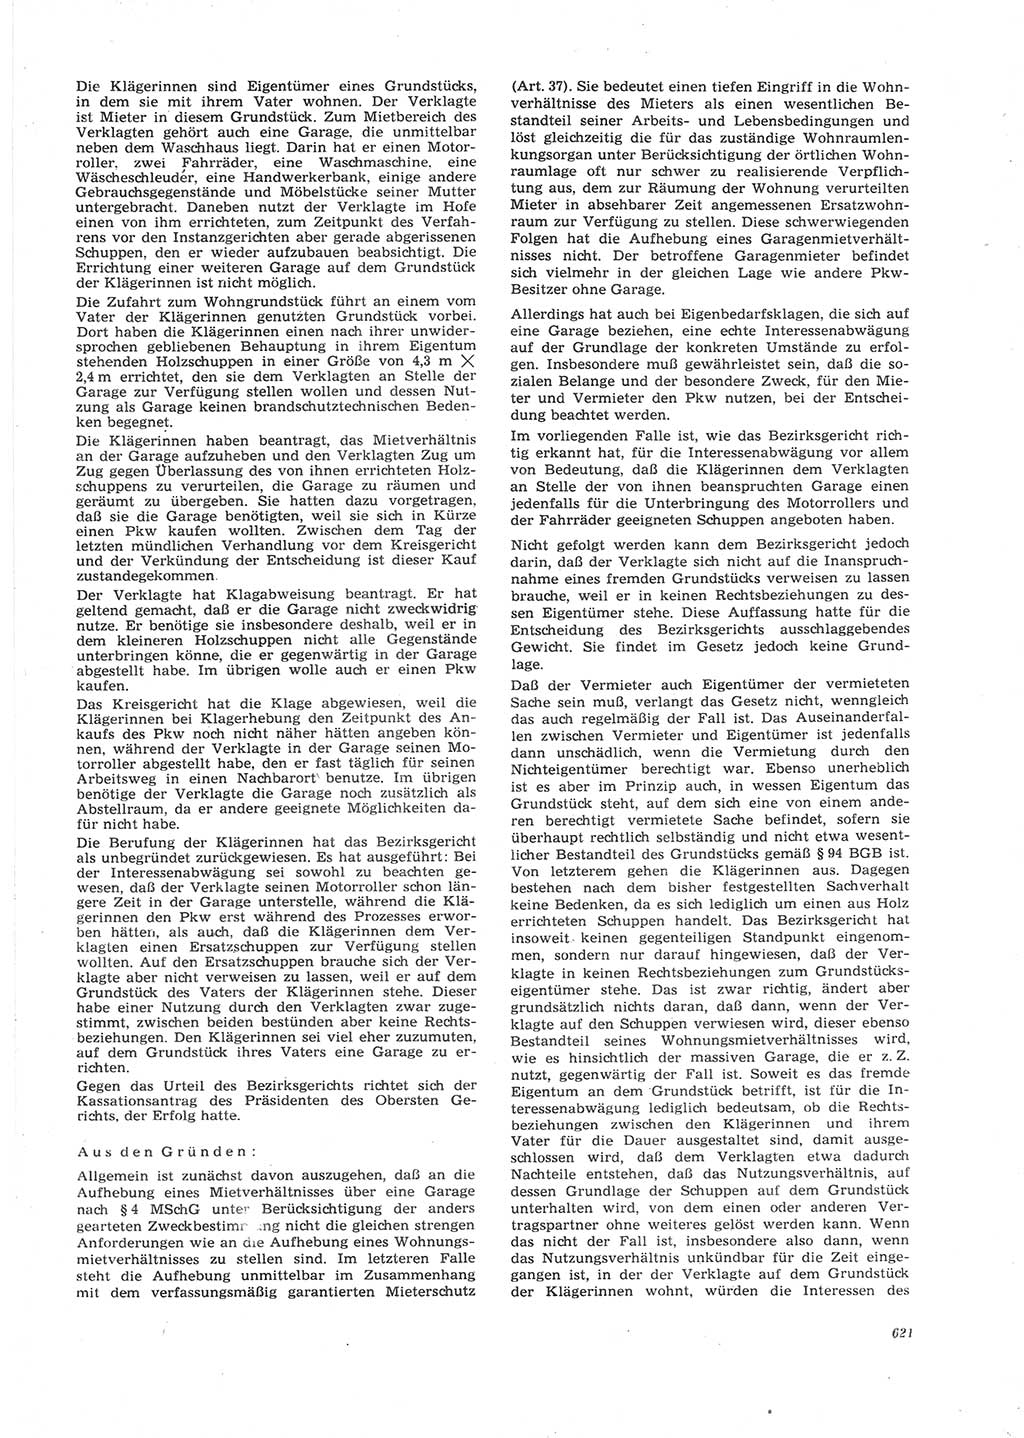 Neue Justiz (NJ), Zeitschrift für Recht und Rechtswissenschaft [Deutsche Demokratische Republik (DDR)], 26. Jahrgang 1972, Seite 621 (NJ DDR 1972, S. 621)